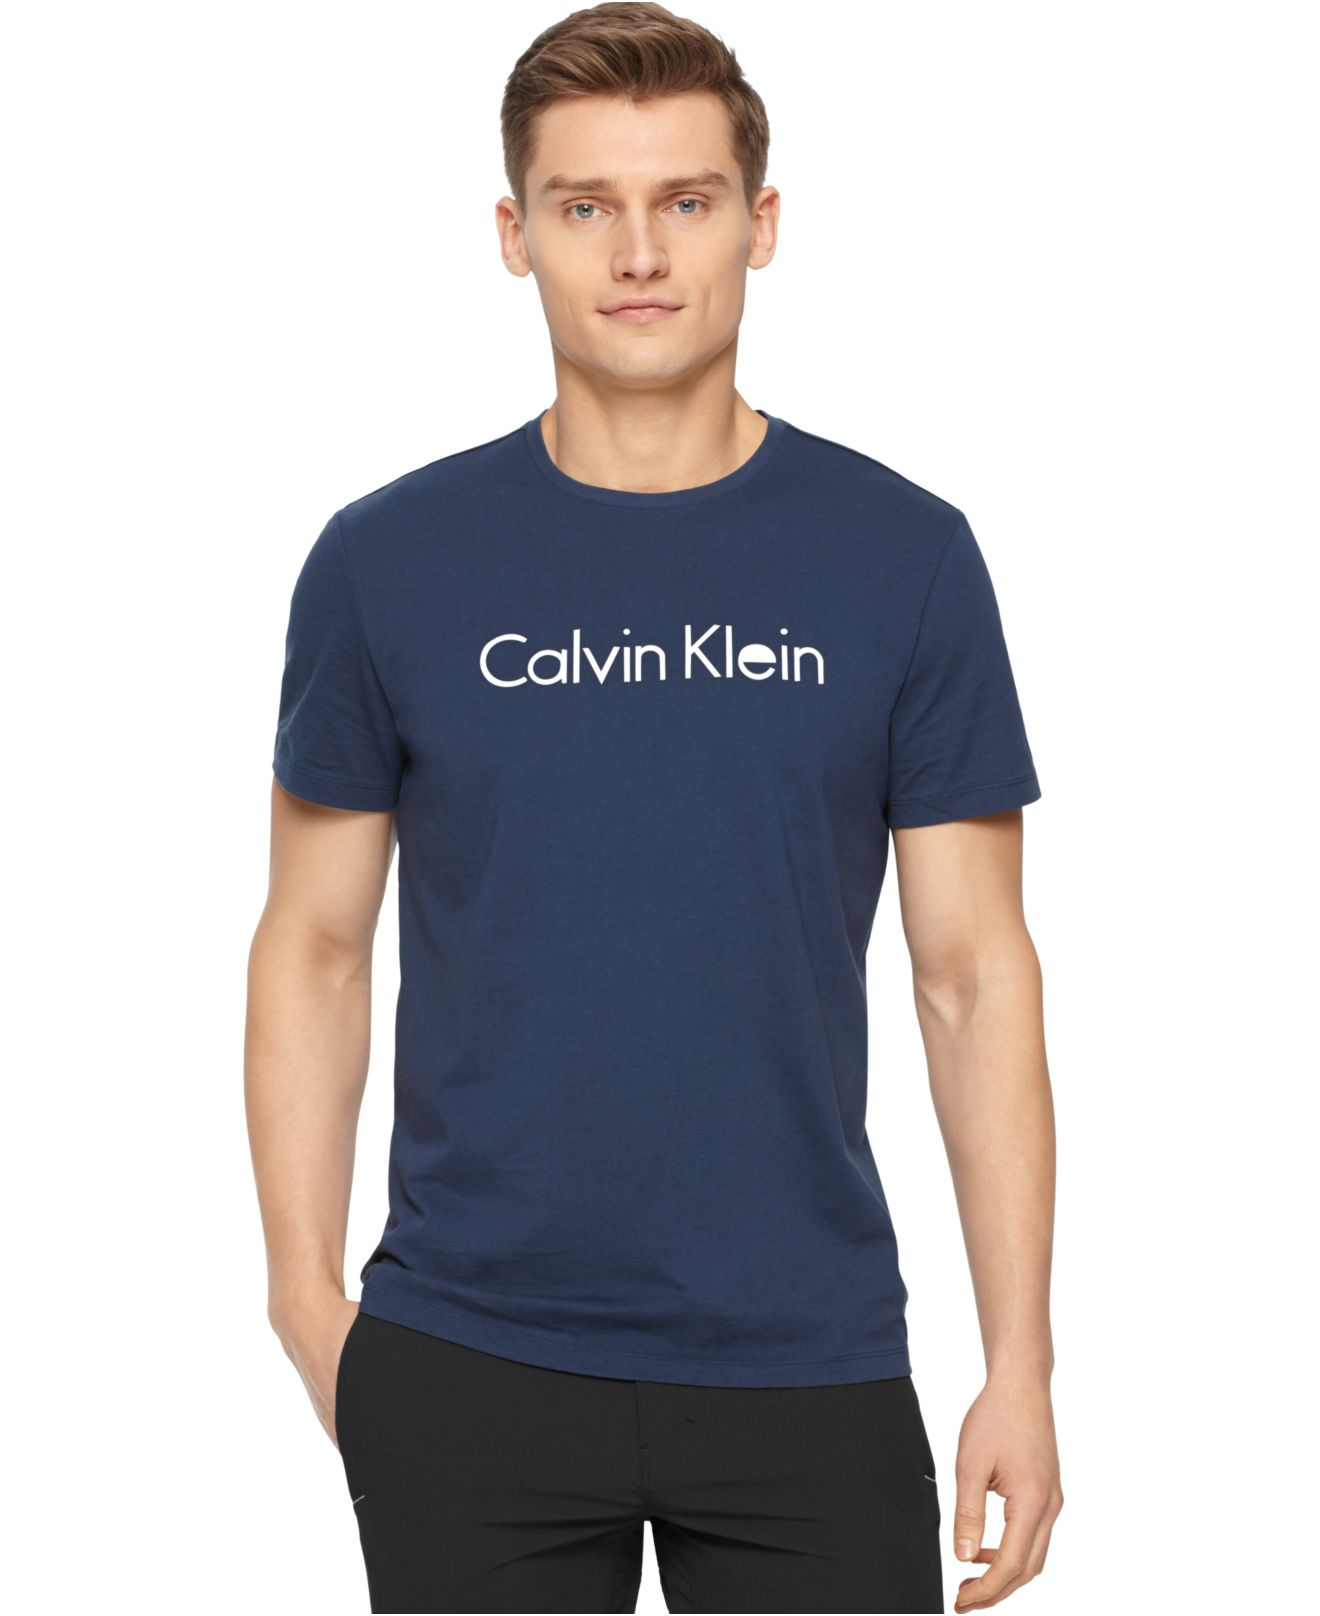 Calvin Klein Blue T Shirt Hot Sale, SAVE 53%.